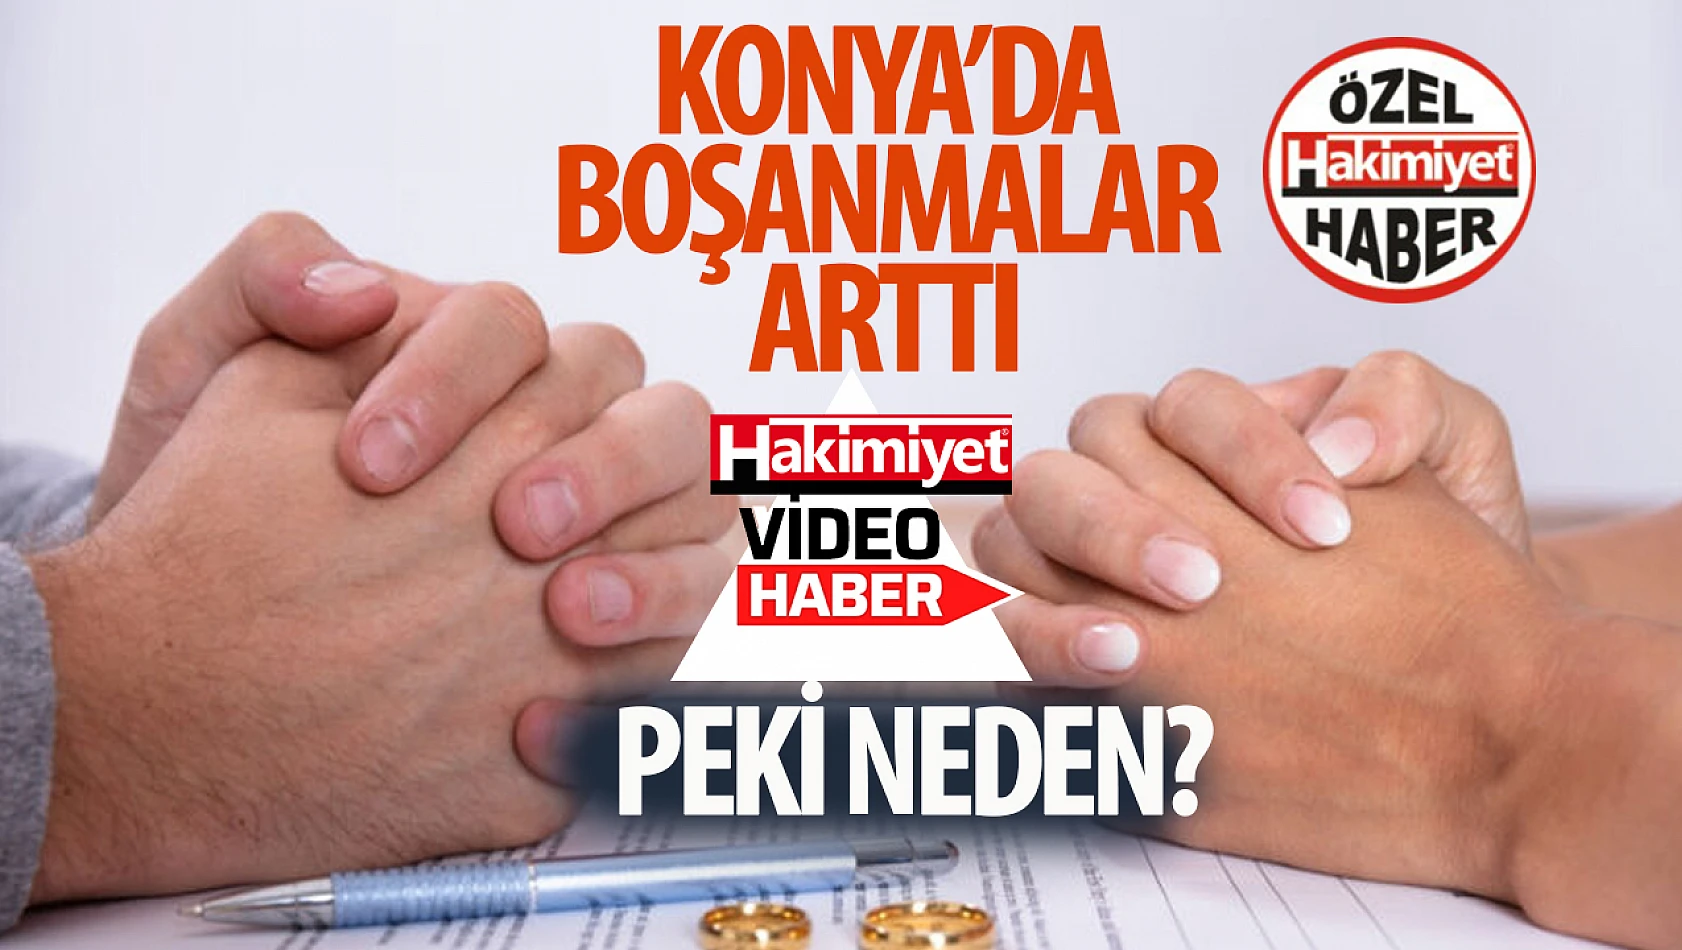 Konya'daki boşanma oranları dikkat çekiyor: Peki neden? 